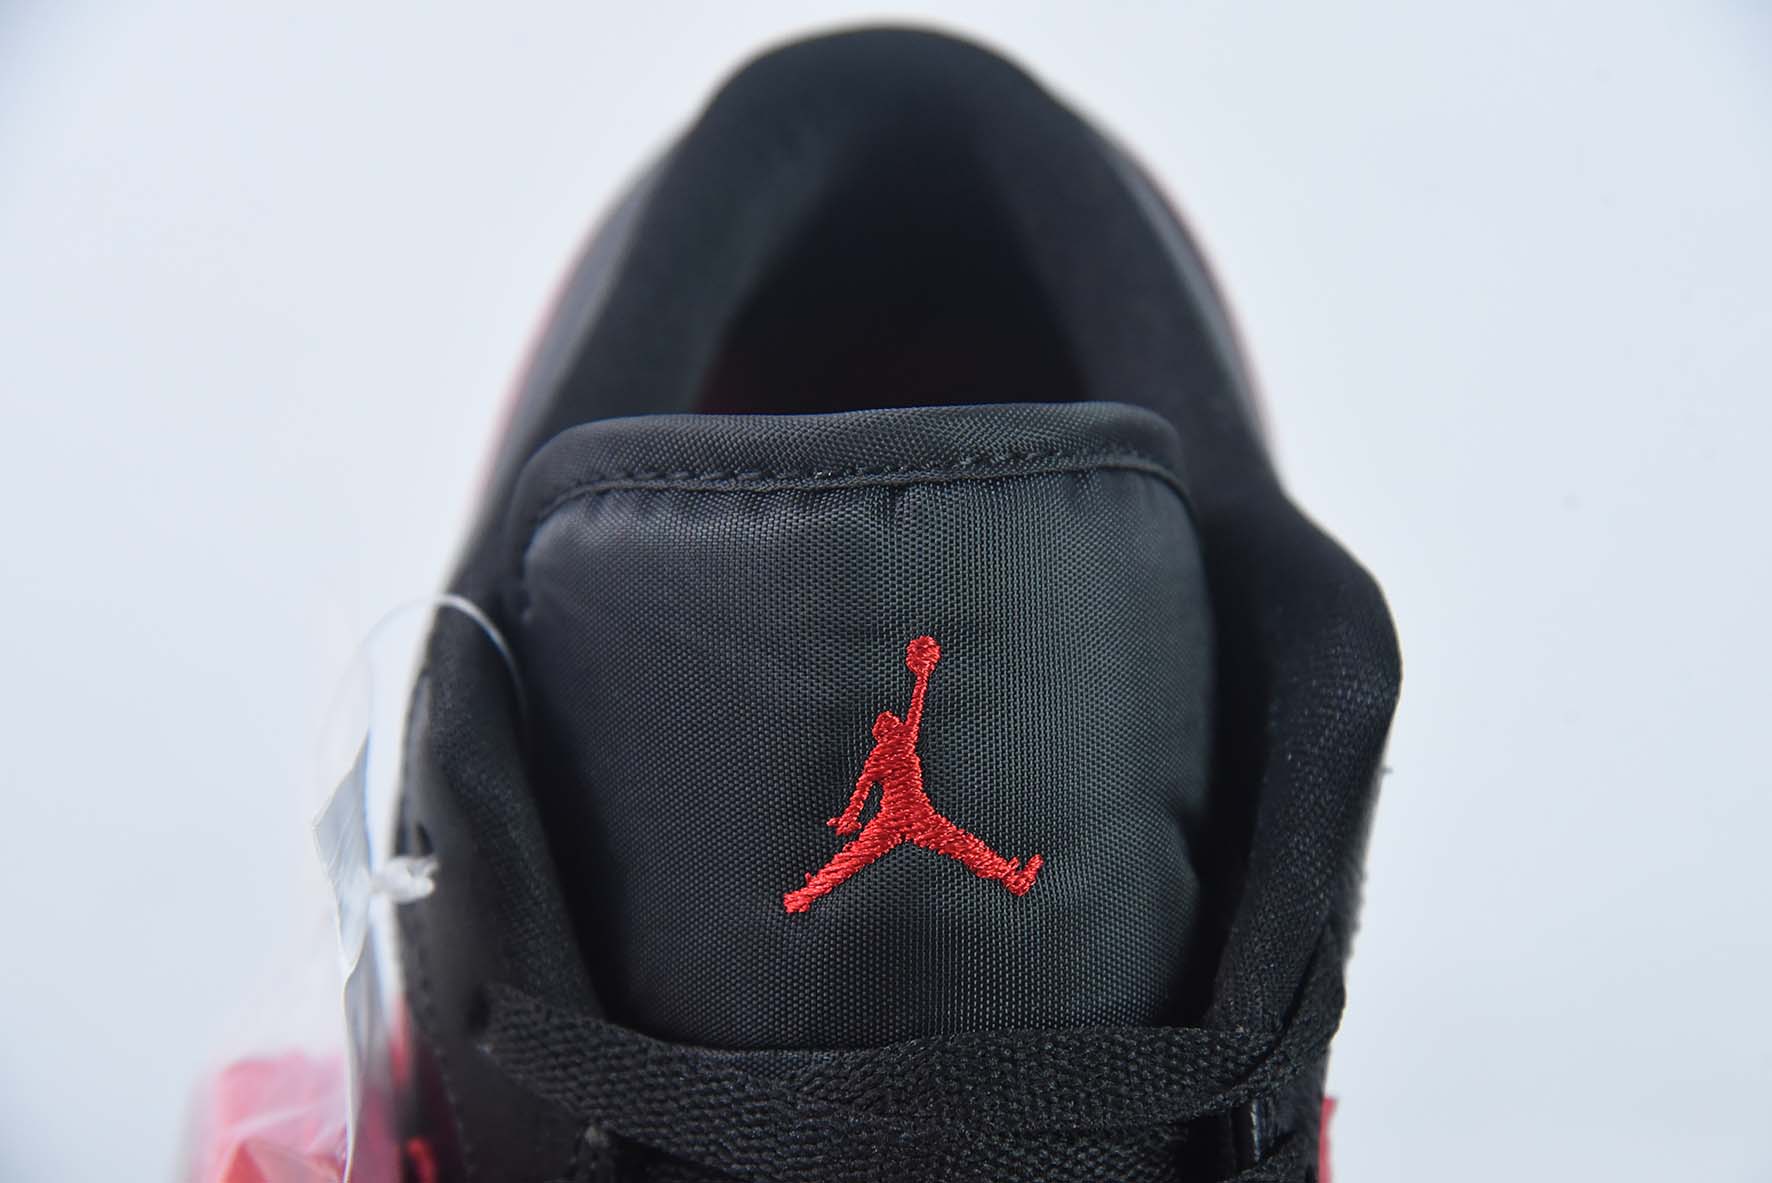 Air Jordan 1 Low AJ1 乔丹1代低帮篮球鞋/黑红 2023年新款发售 货号：DC0774-061